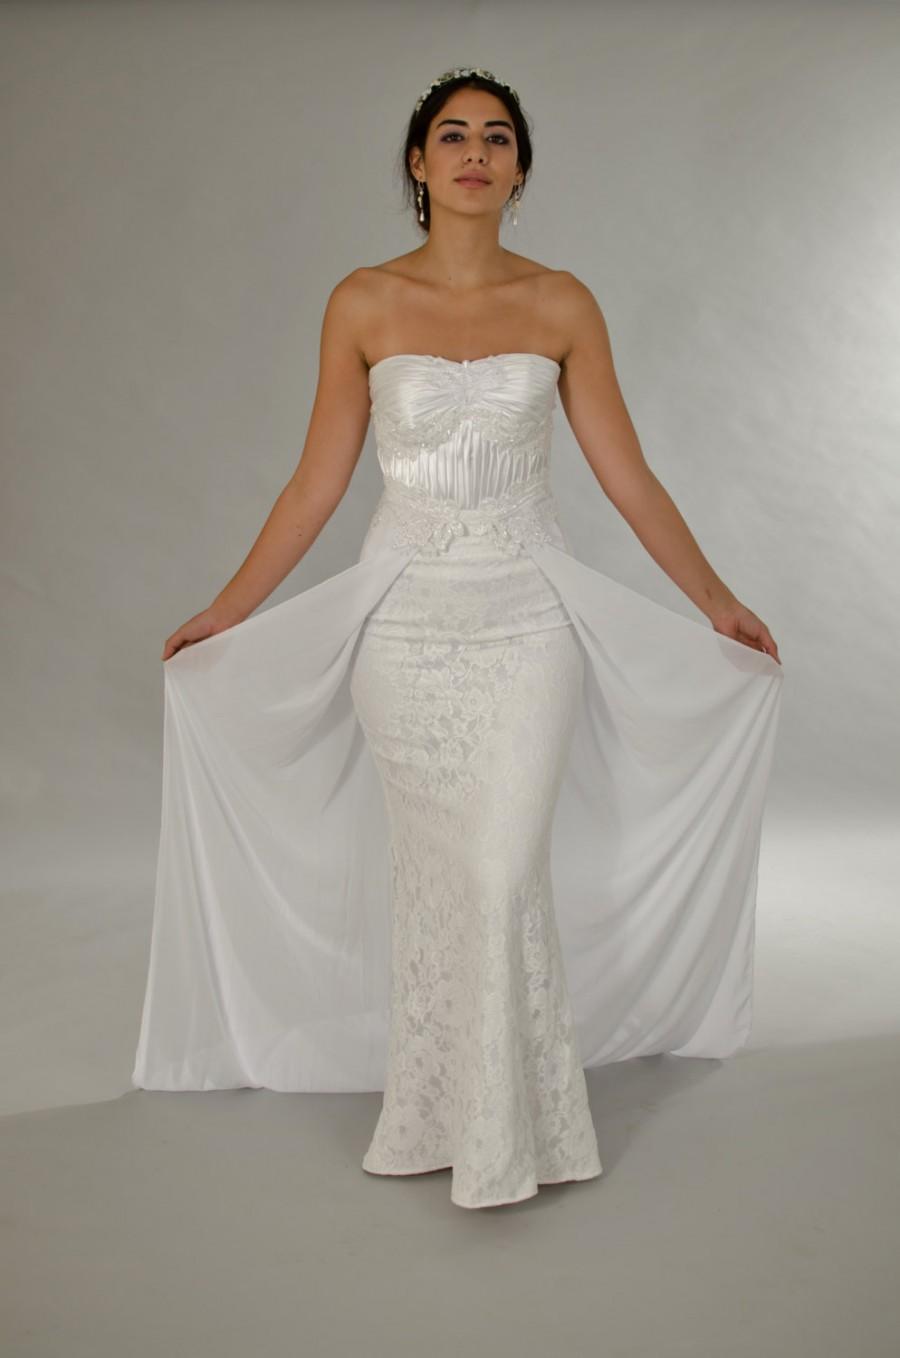 زفاف - Classic wedding dress, Lace wedding dress, White dress, Wedding dress, Bridal dress.